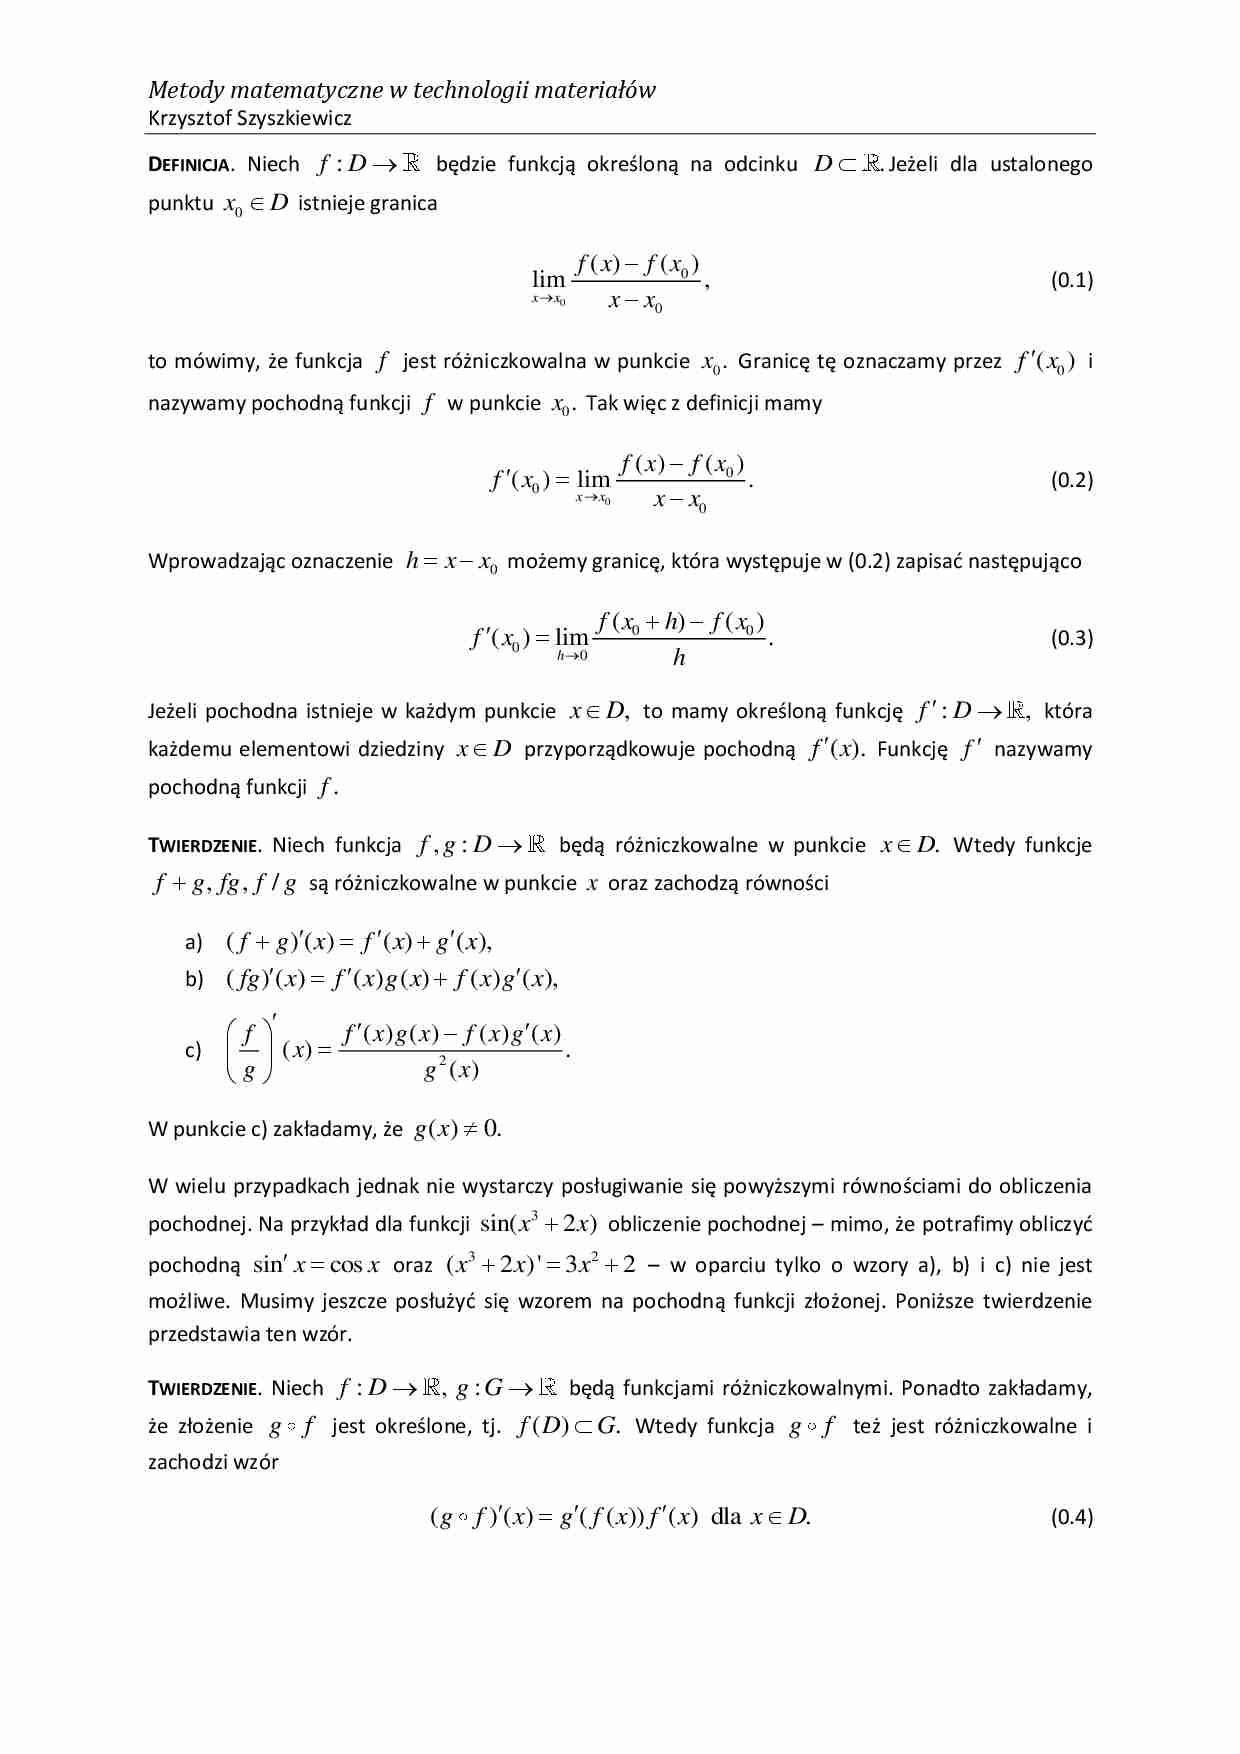 Metody matematyczne w technologii materiałów - ćwiczenia 1 - strona 1